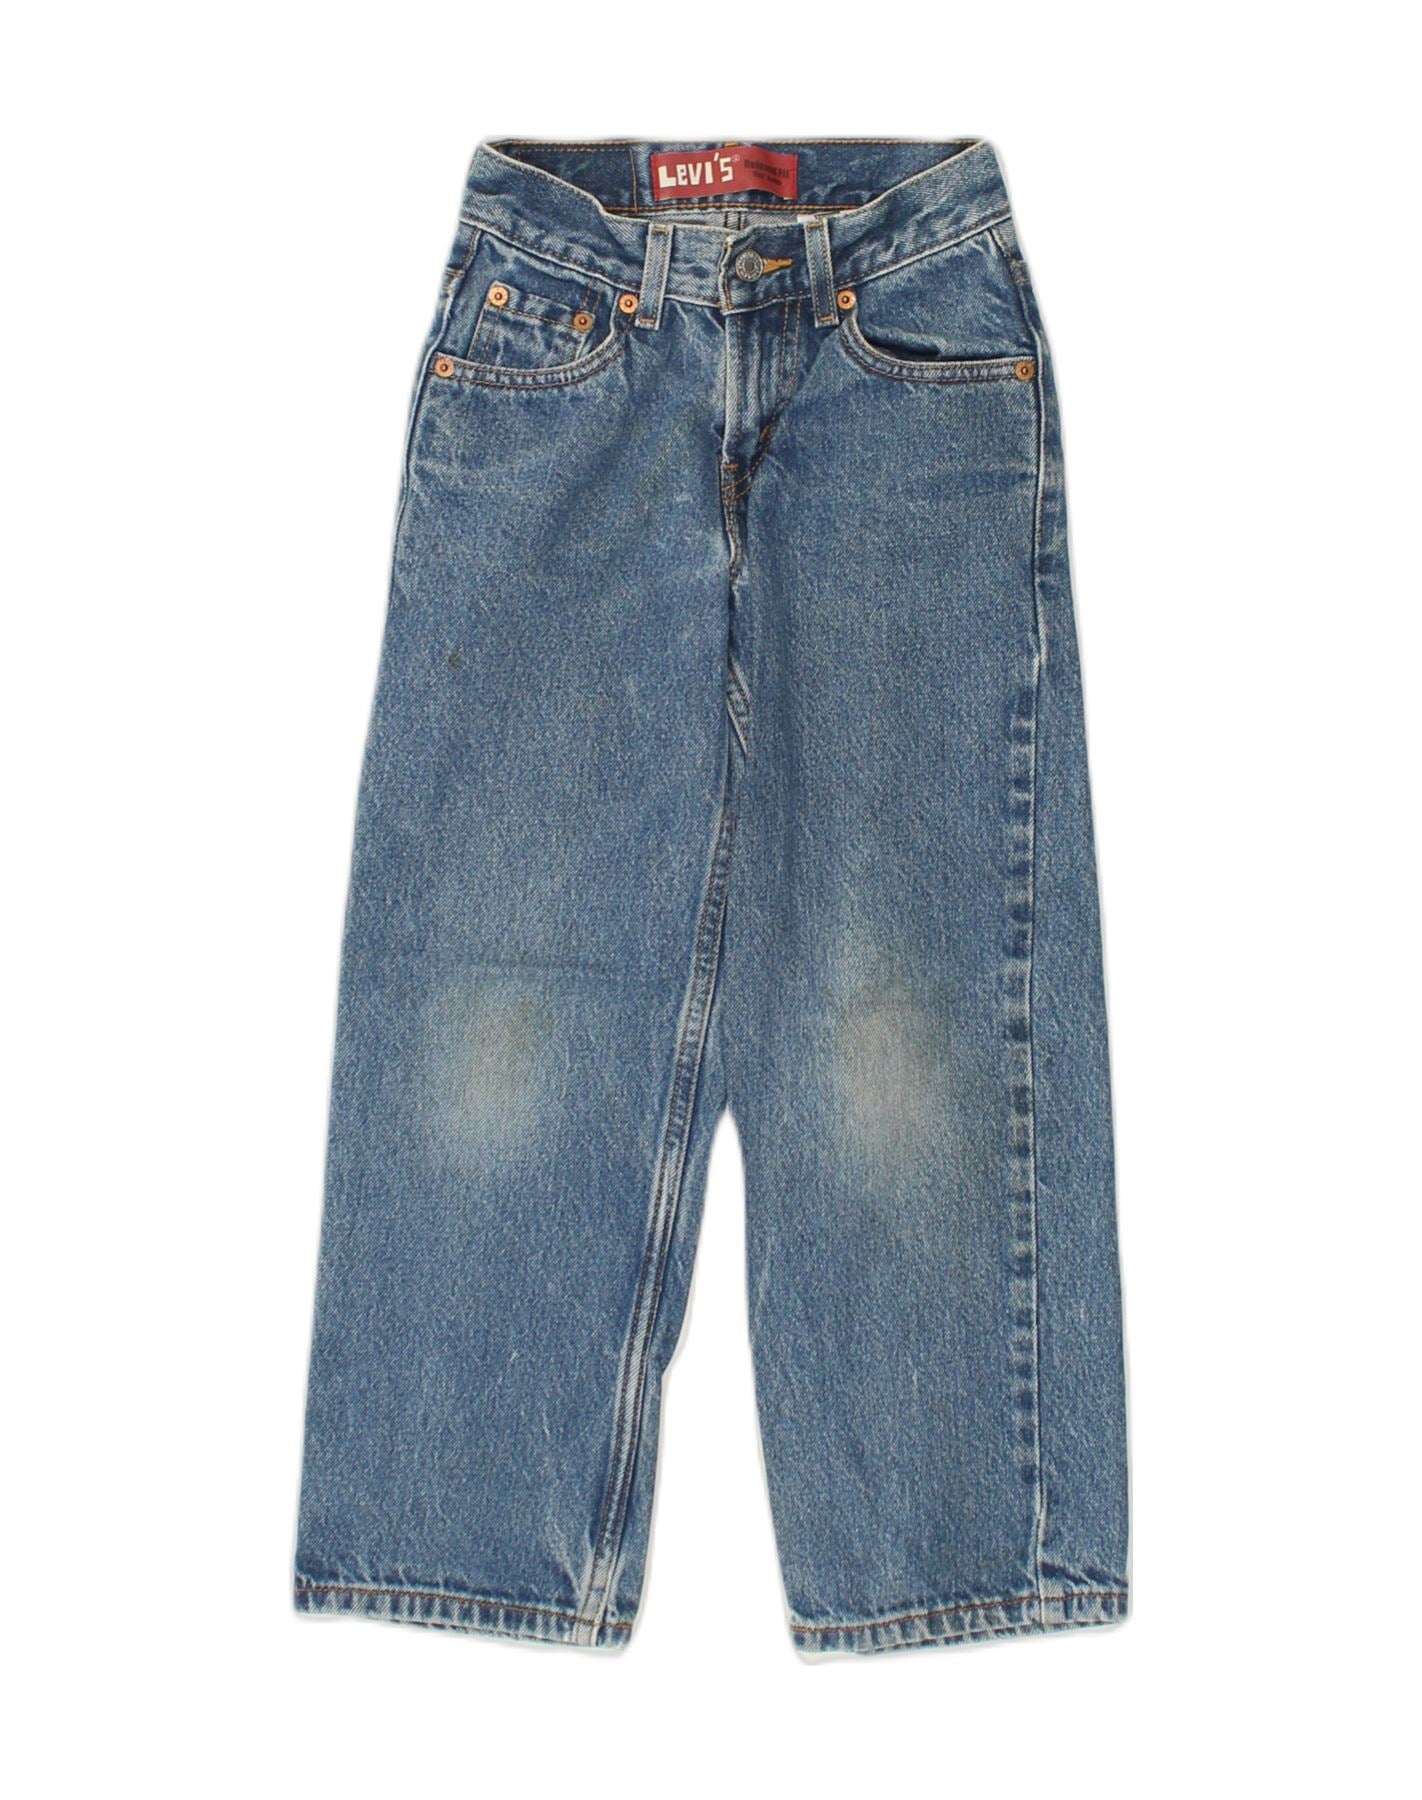 Vintage Levi's 550 Straight Jean